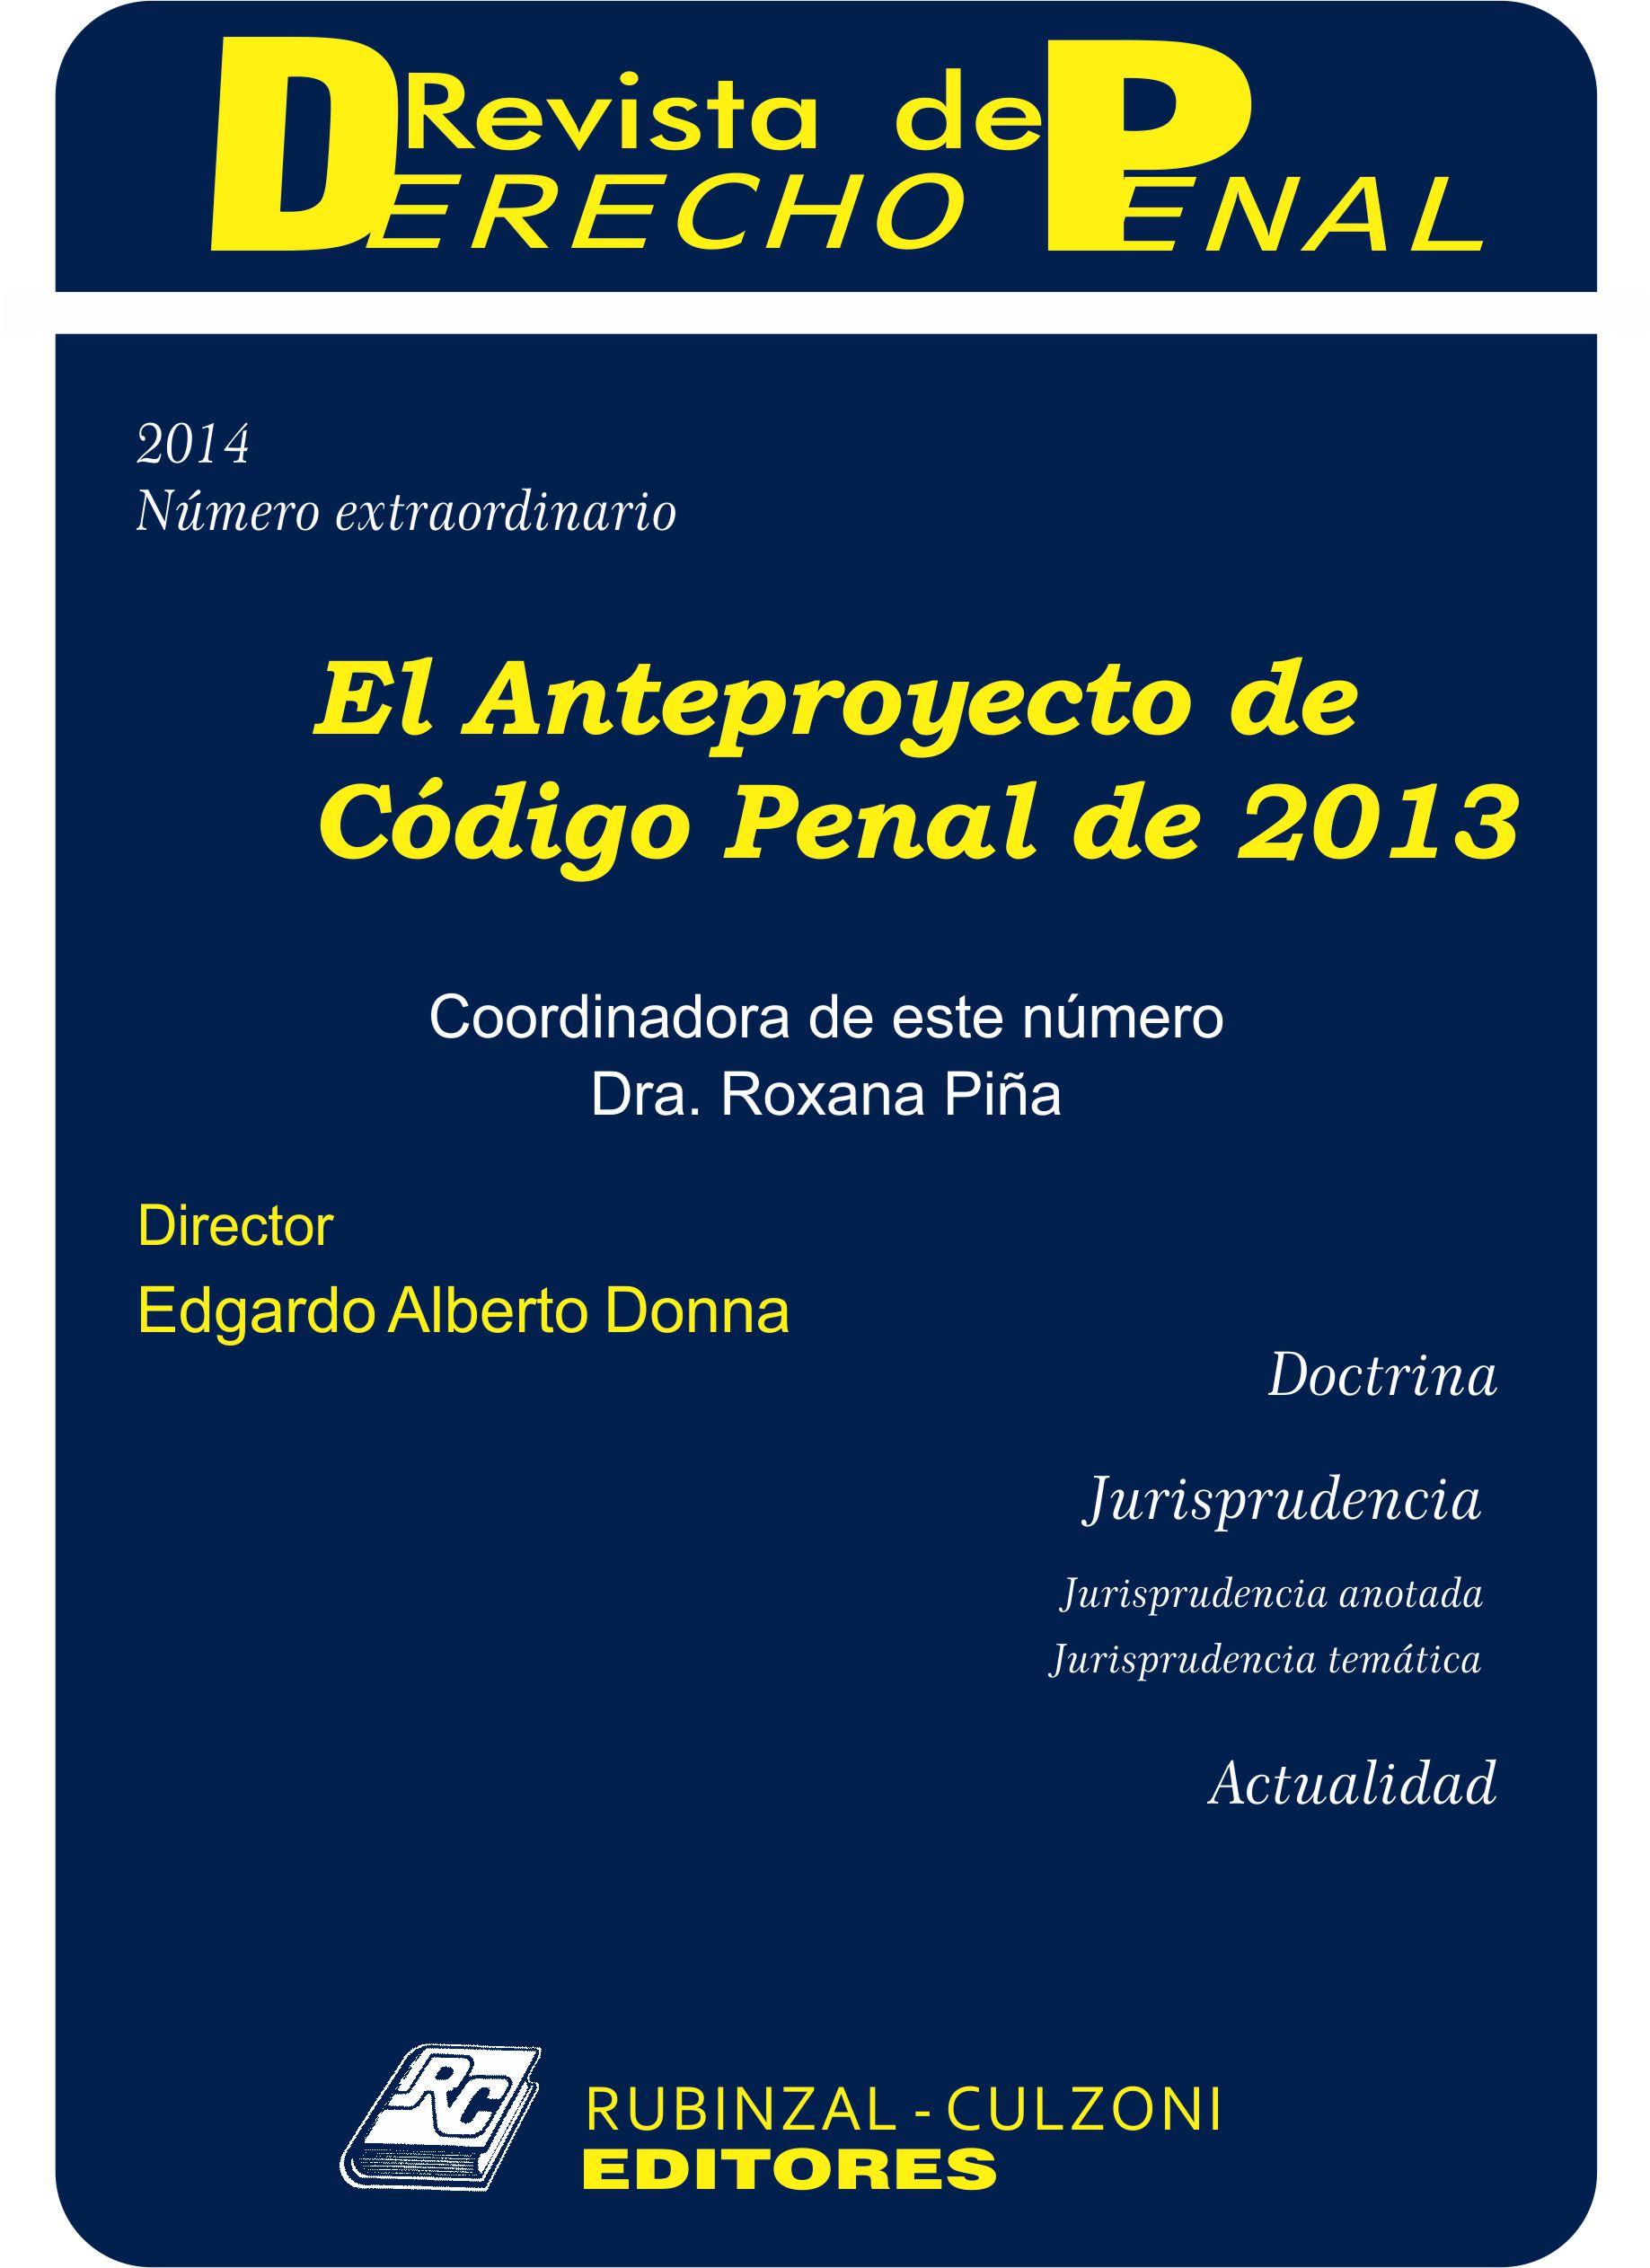 Revista de Derecho Penal - Número Extraordinario. El Anteproyecto de Código Penal de 2013.